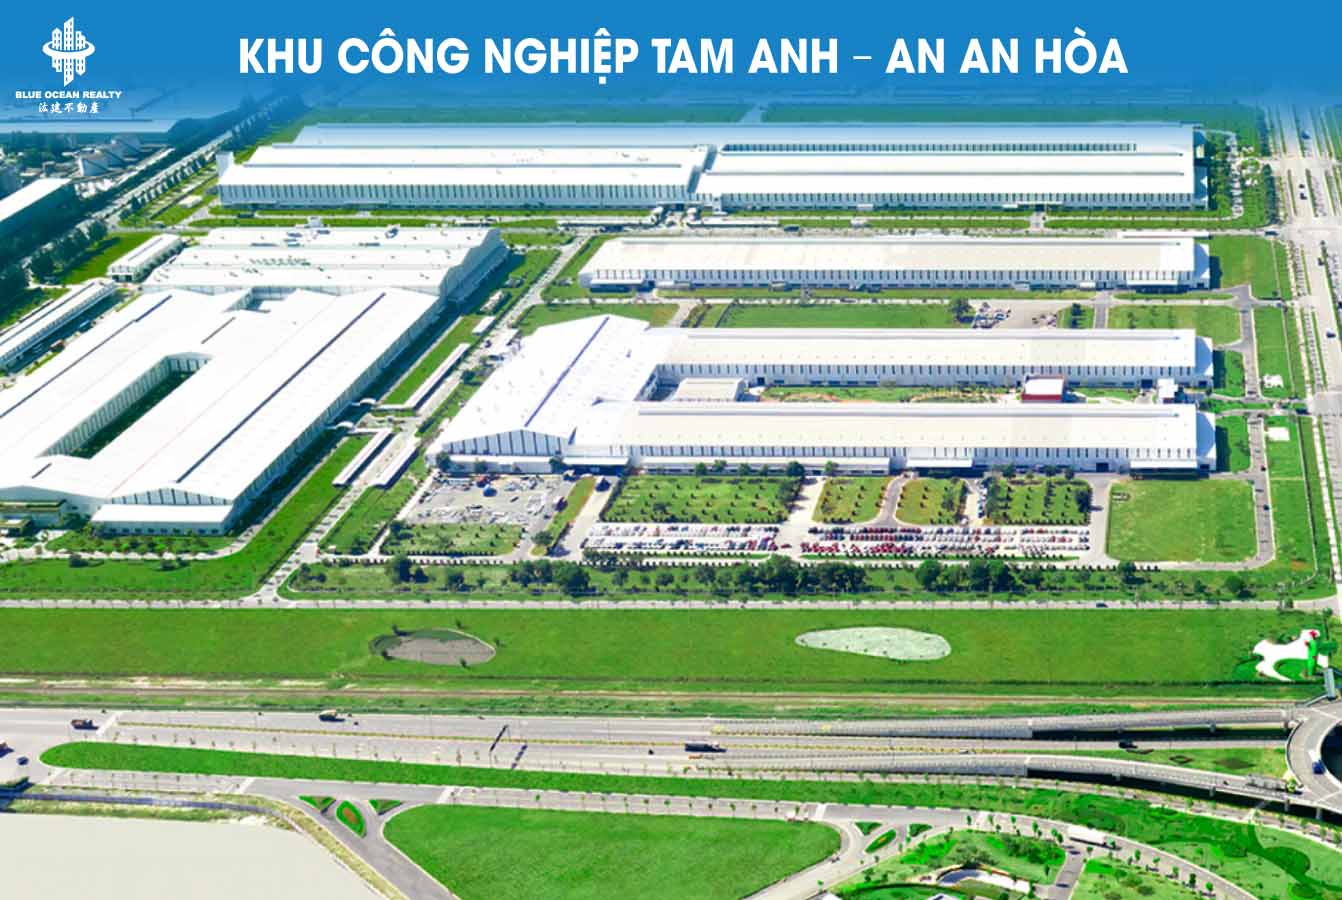 Khu công nghiệp (KCN) Tam Anh – An An Hòa